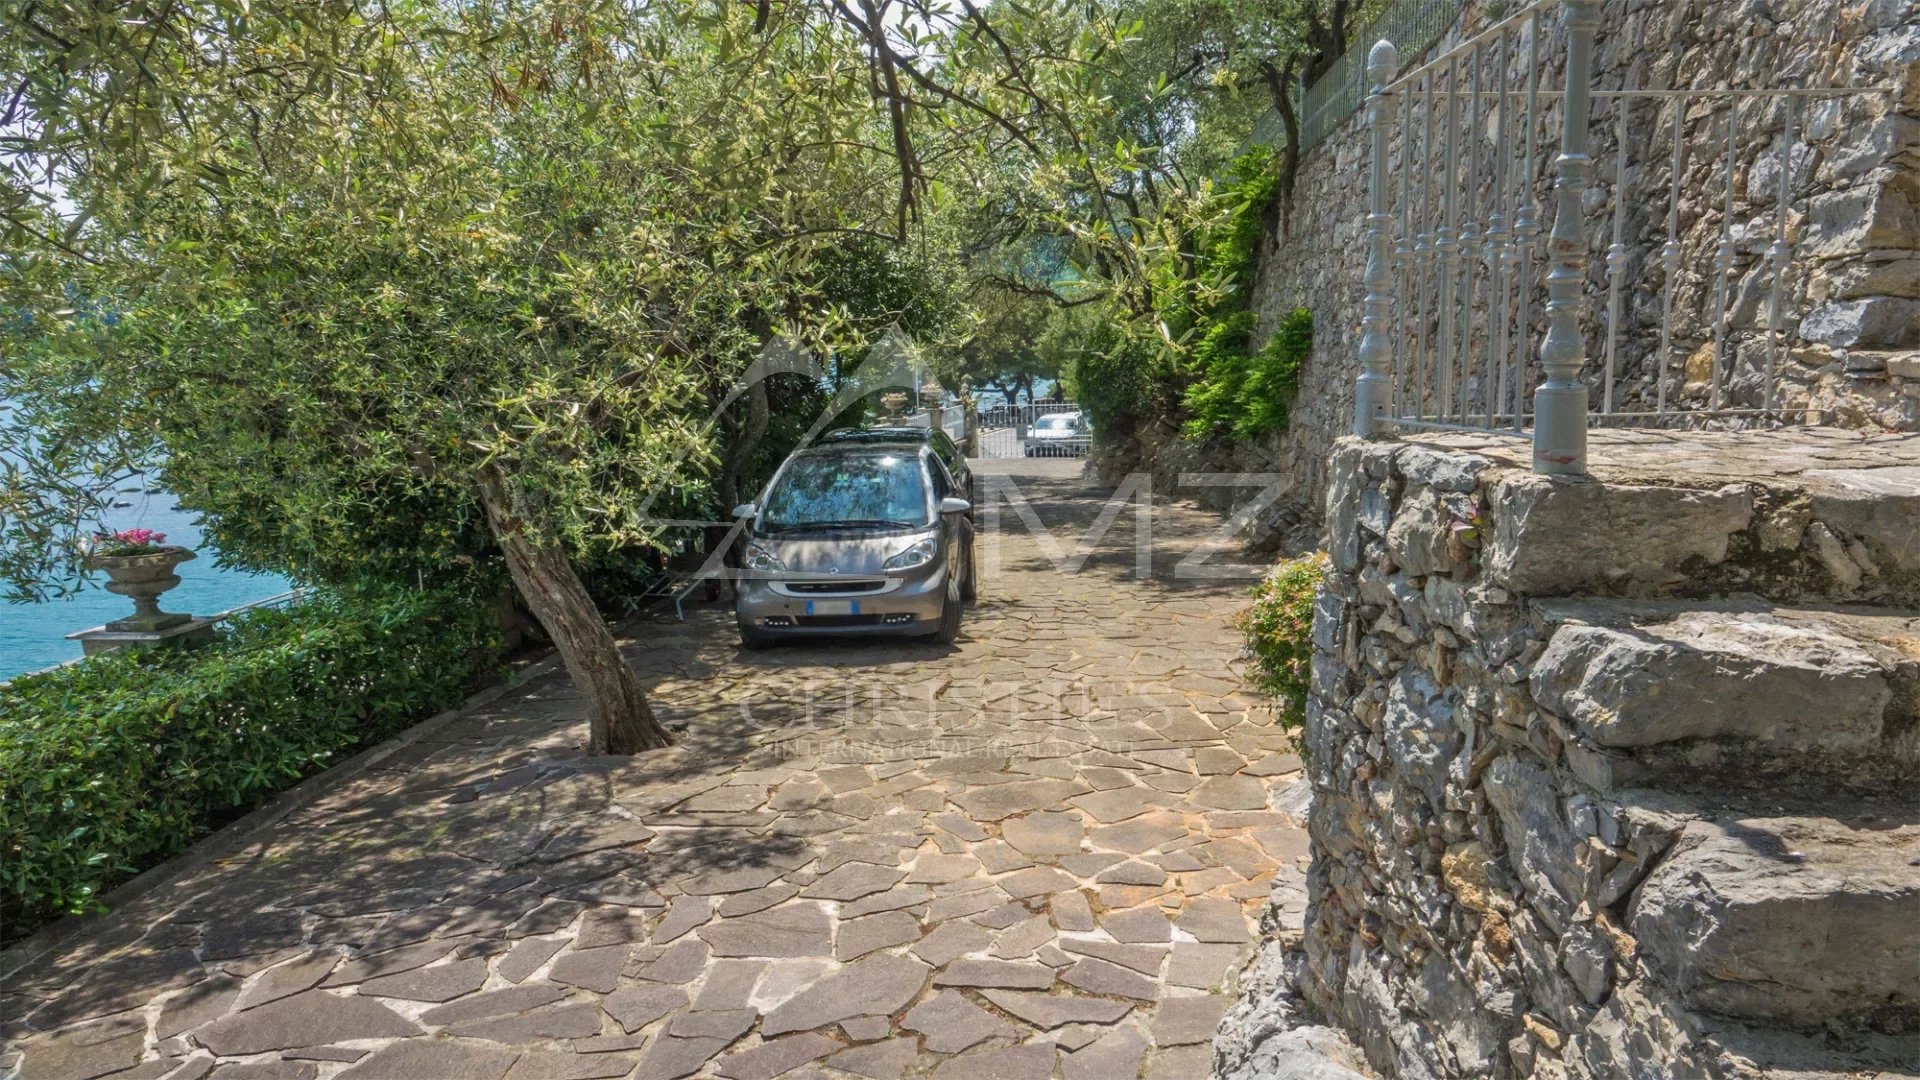 Villa historique de prestige avec dépendances, piscine et parkings, sur l'eau à Portovenere